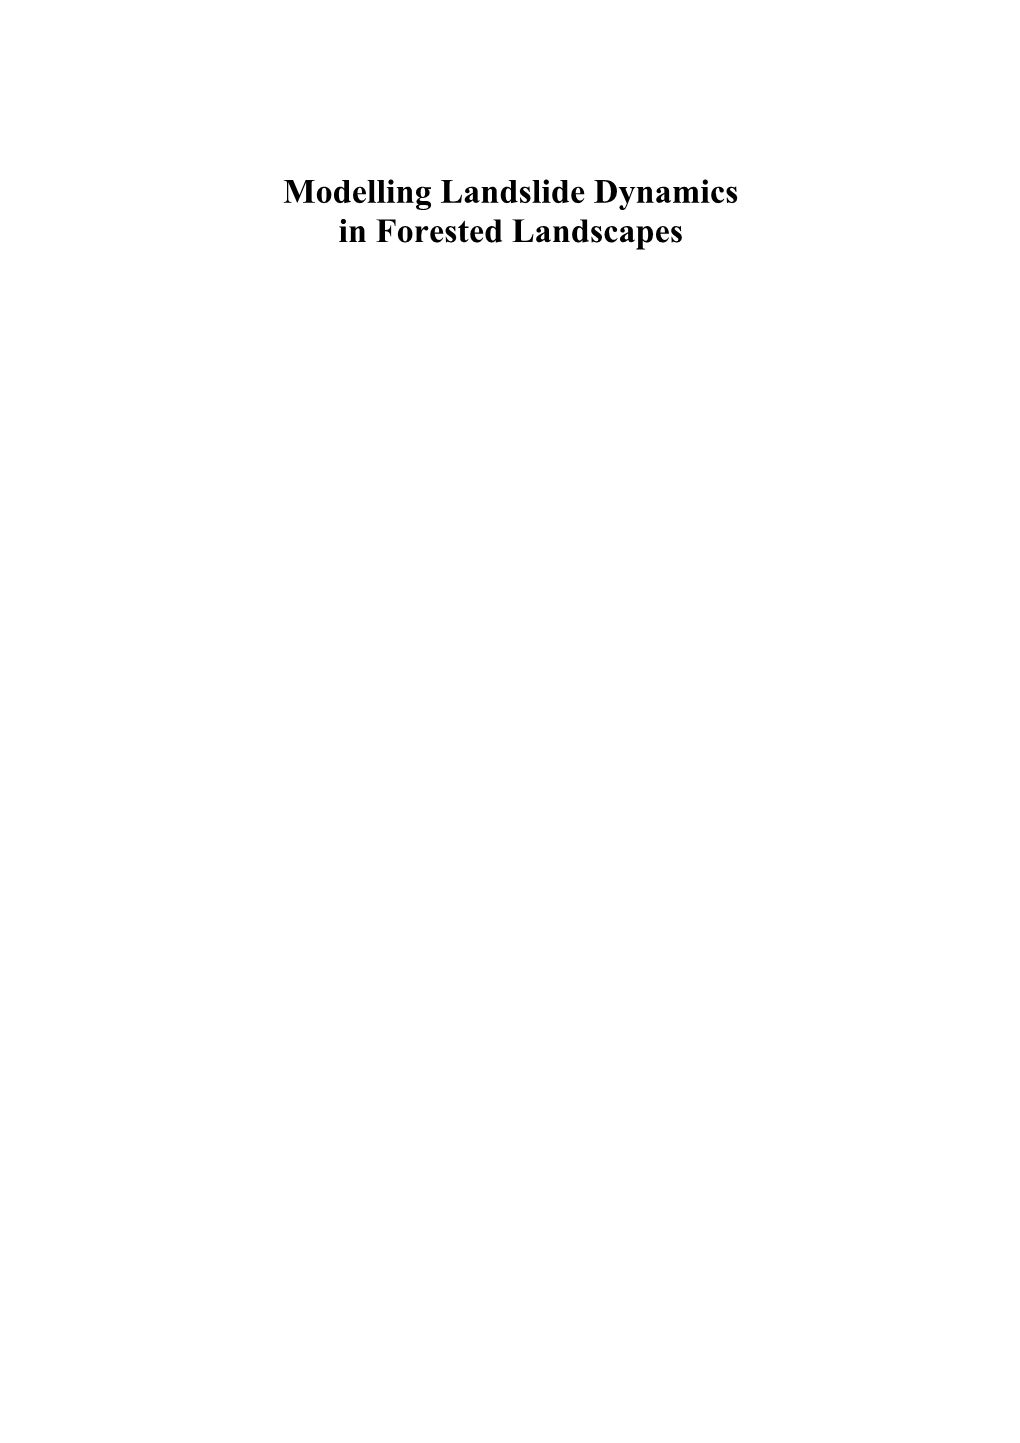 Modelling Landslide Dynamics in Forested Landscapes